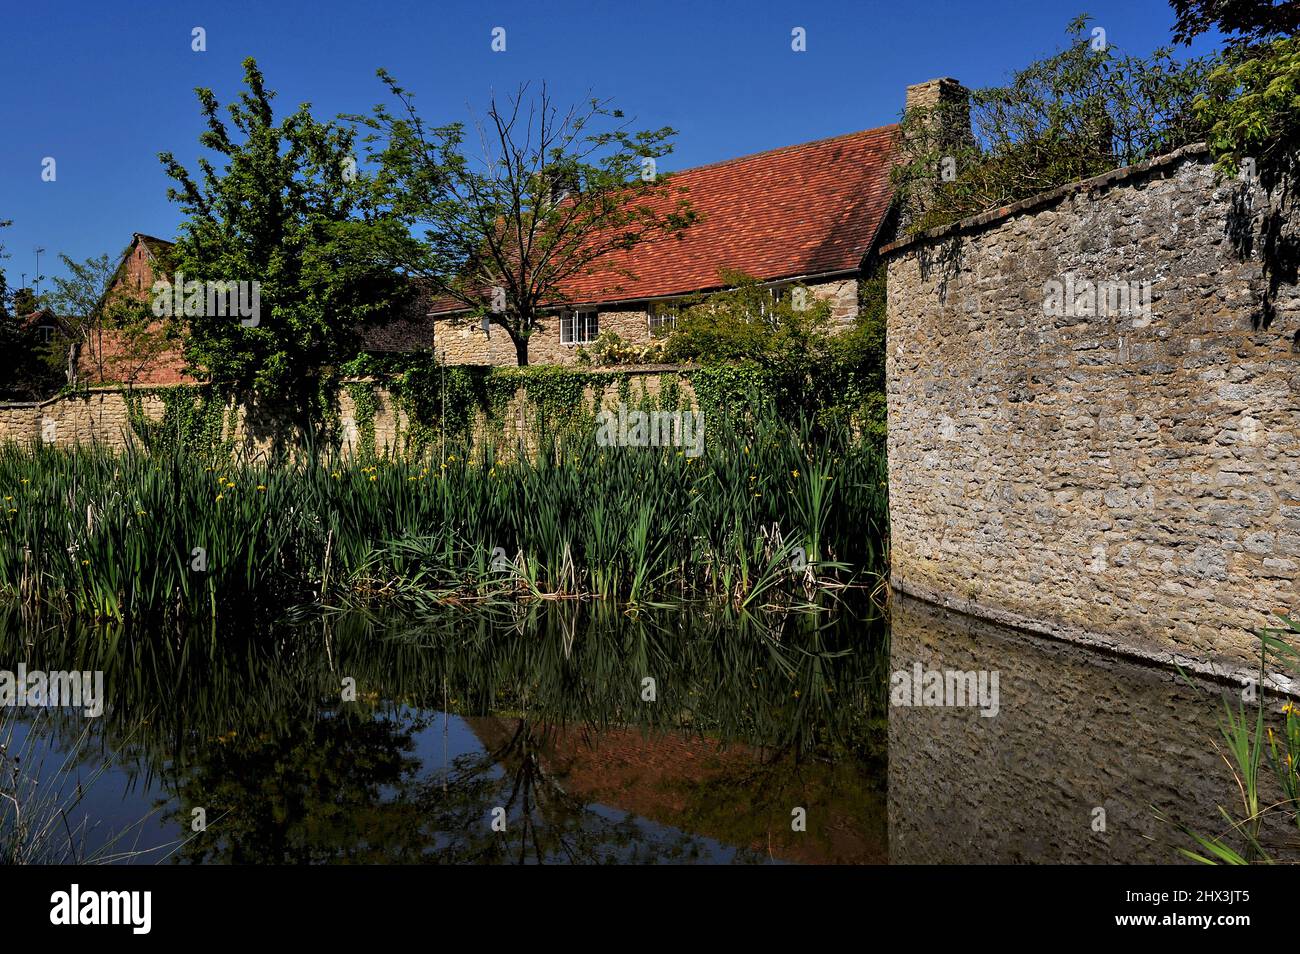 Riflessioni nel laghetto villaggio di Appleton, Oxfordshire, Inghilterra, Regno Unito, di antiche mura, un antico casale del 18th secolo e piante paludose come le iride e i bulrushes di acqua gialla. Foto Stock